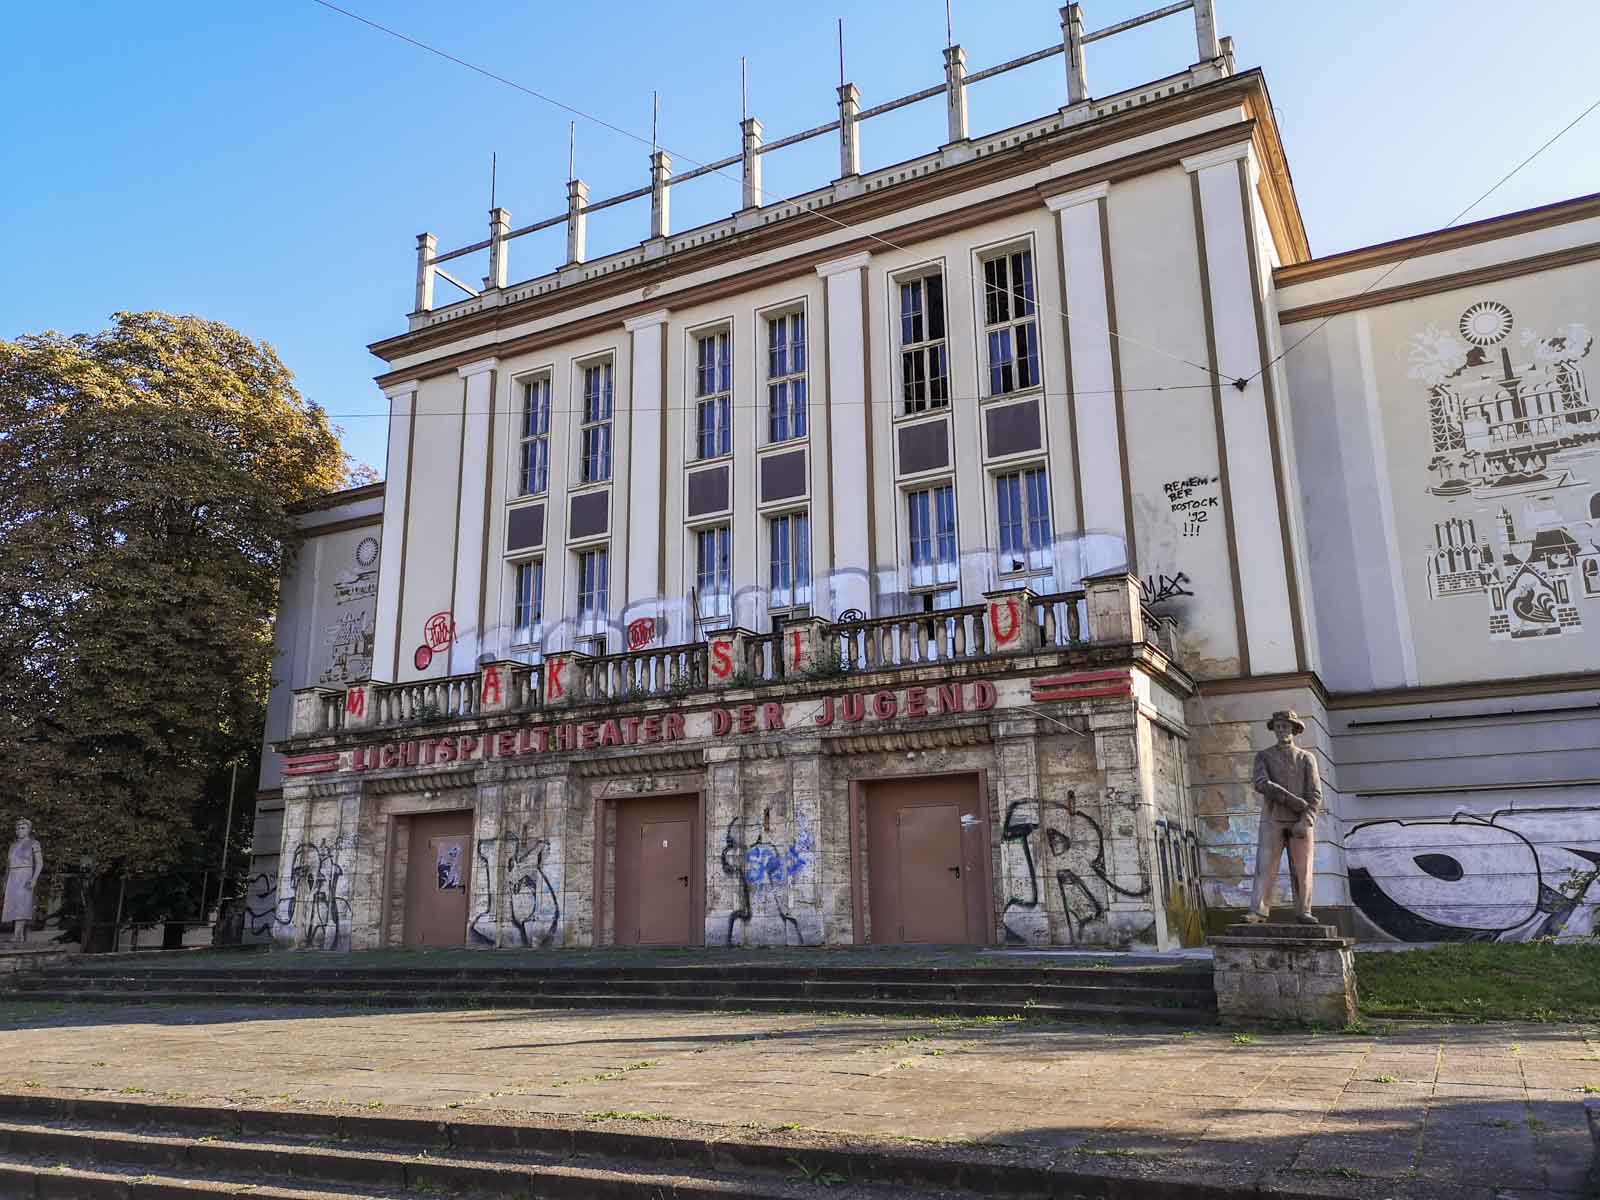 Lichtspieltheater der Jugend Frankfurt (Oder)